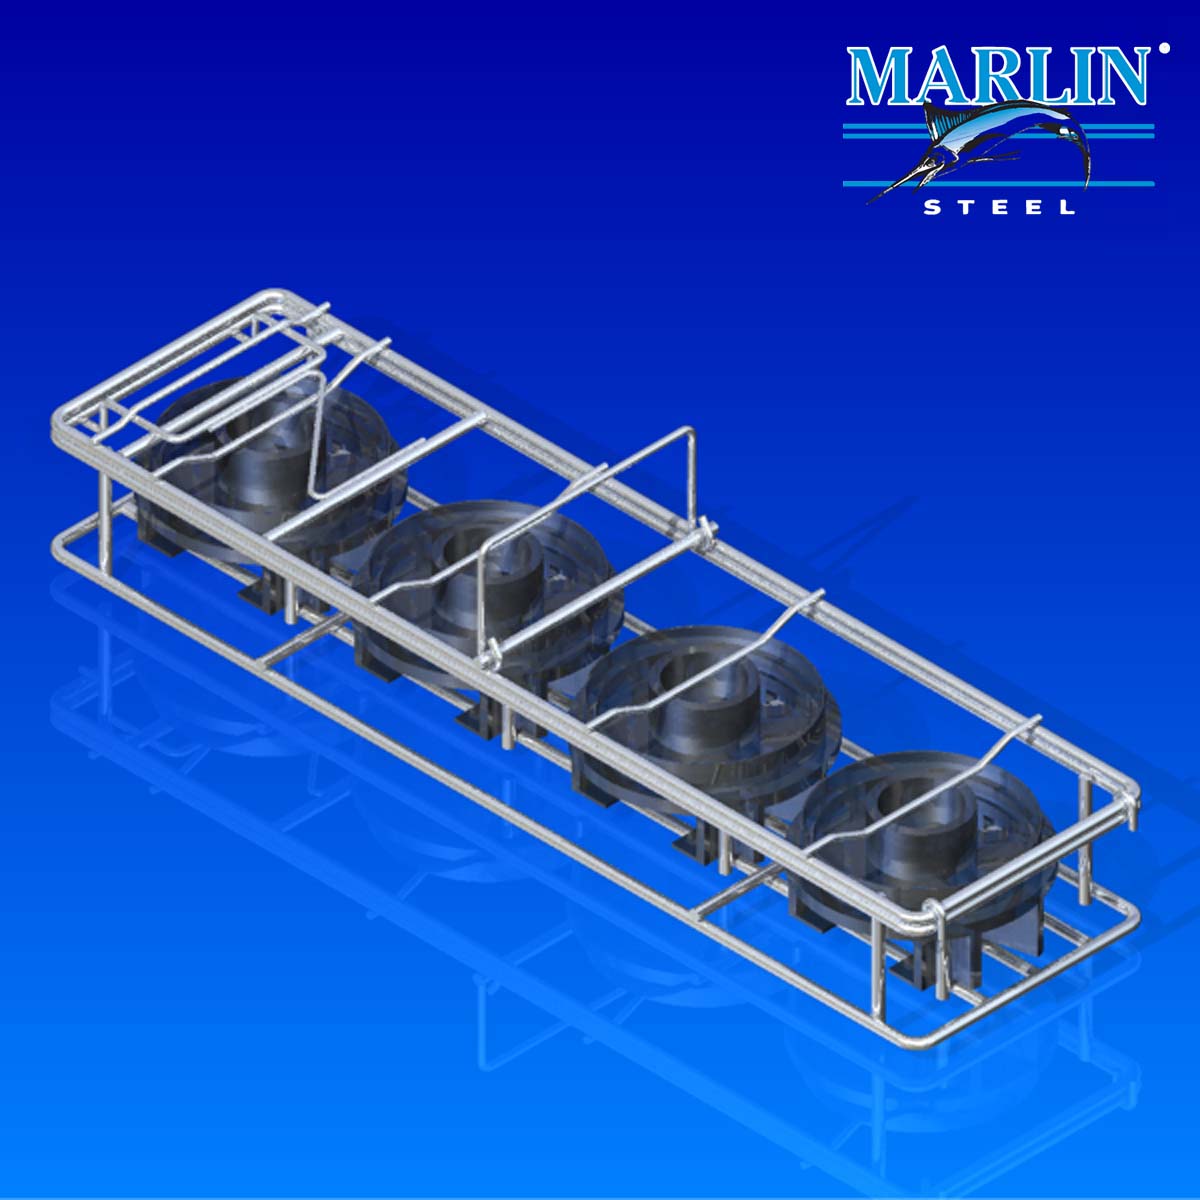 Marlin Steel Material Handling Basket 390003